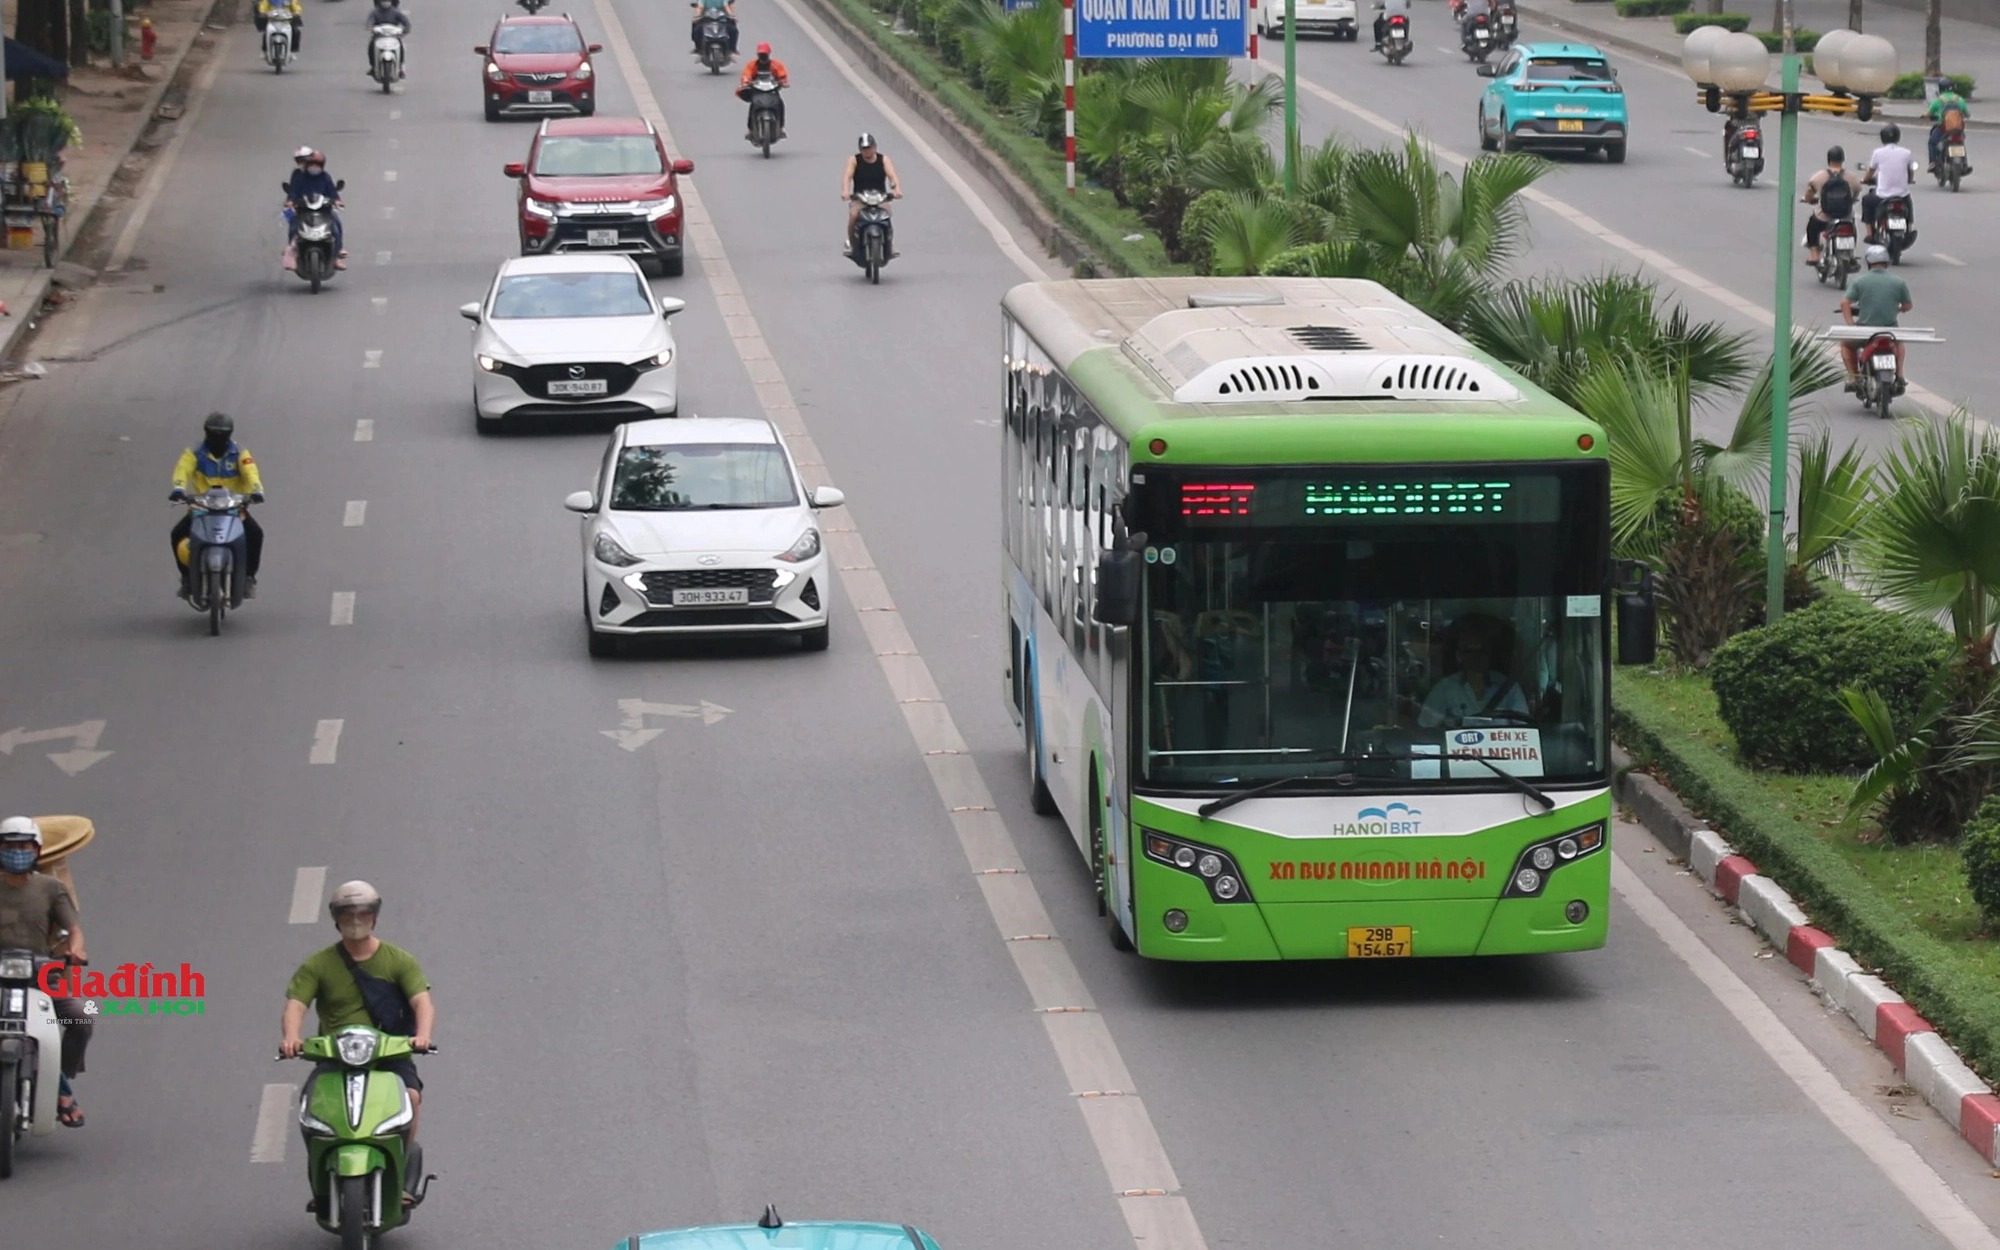 Hà Nội: Tuyến buýt nhanh BRT hoạt động ra sao trước ngày bị 'khai tử'